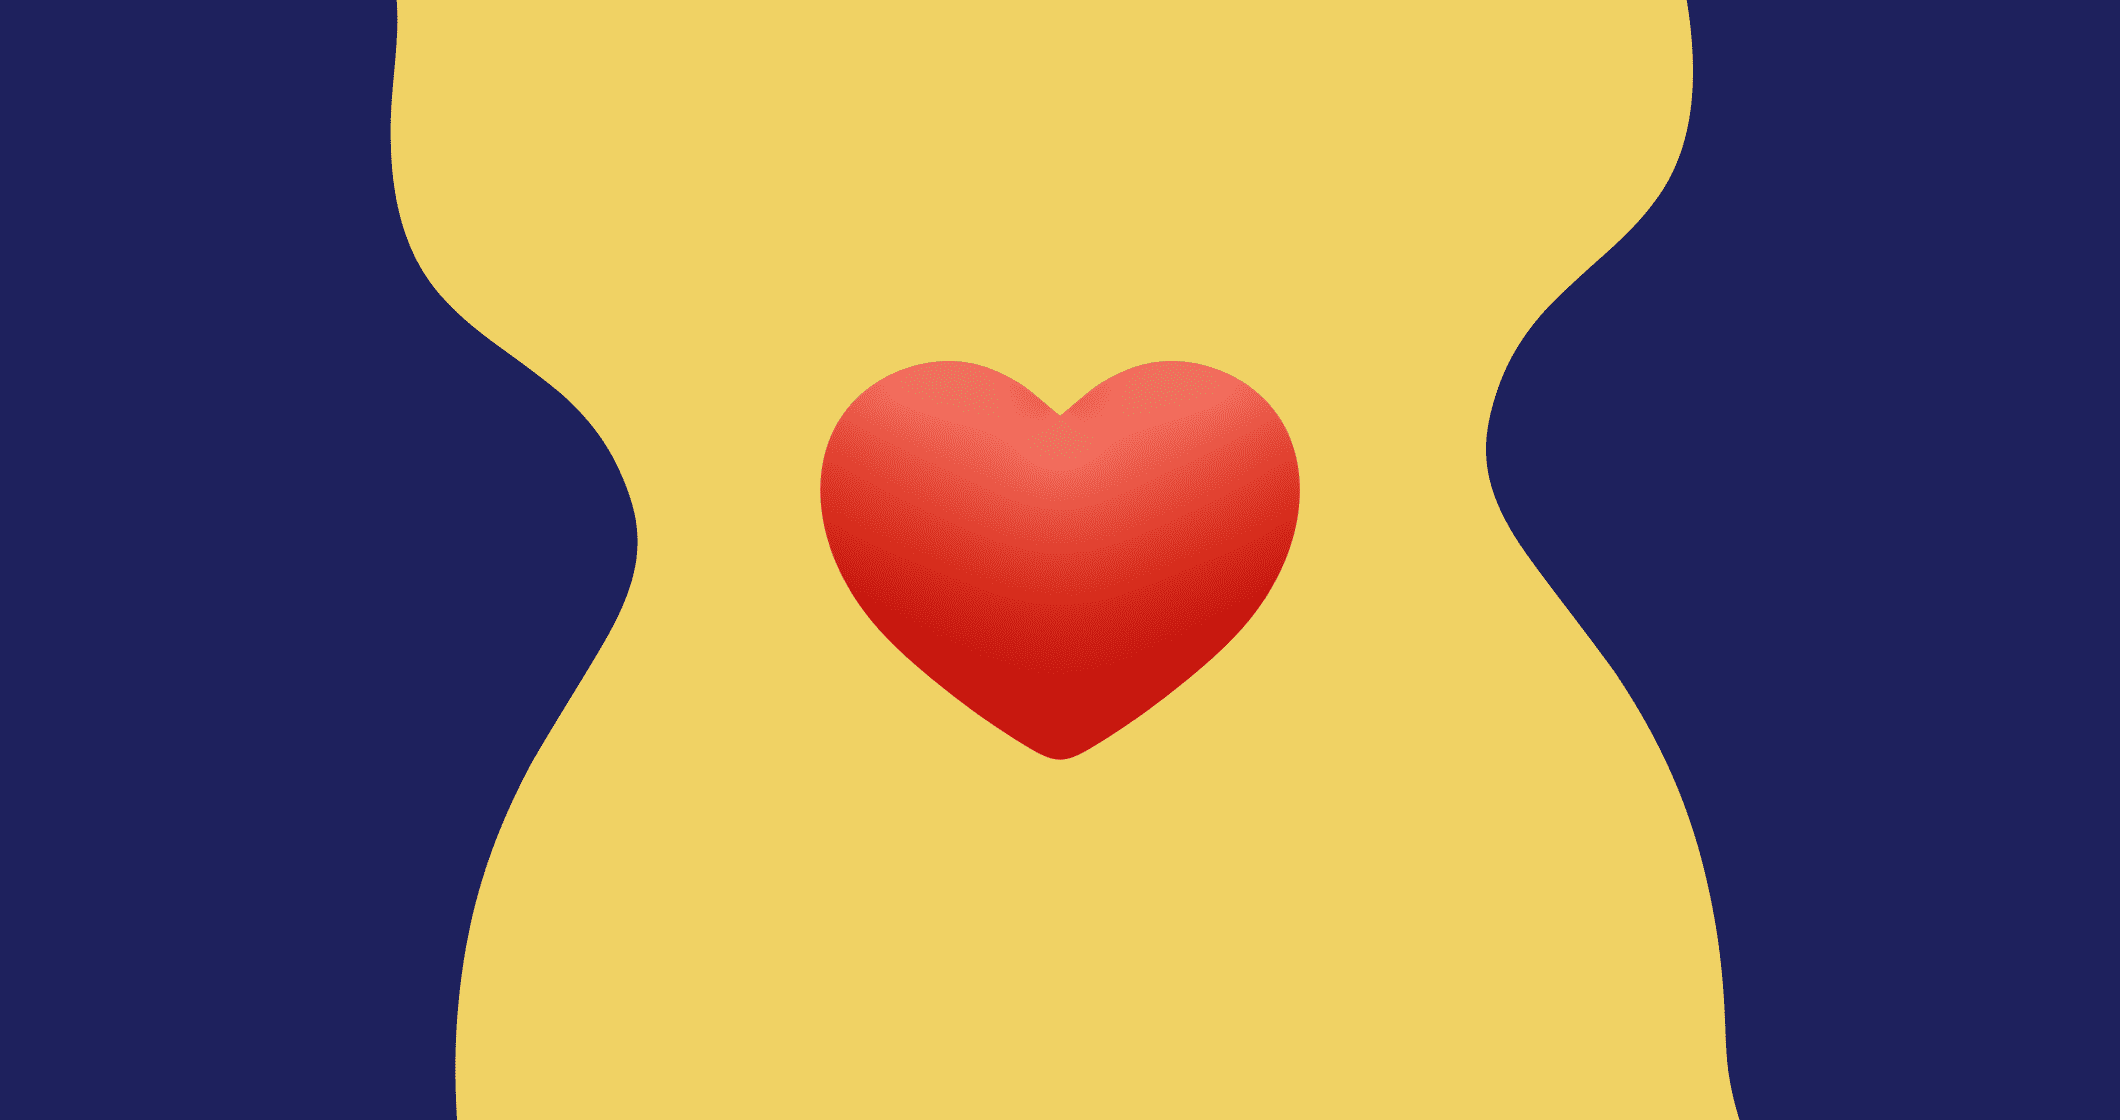 Uma bandeira com um coração vermelho representando a importância da inteligência emocional.